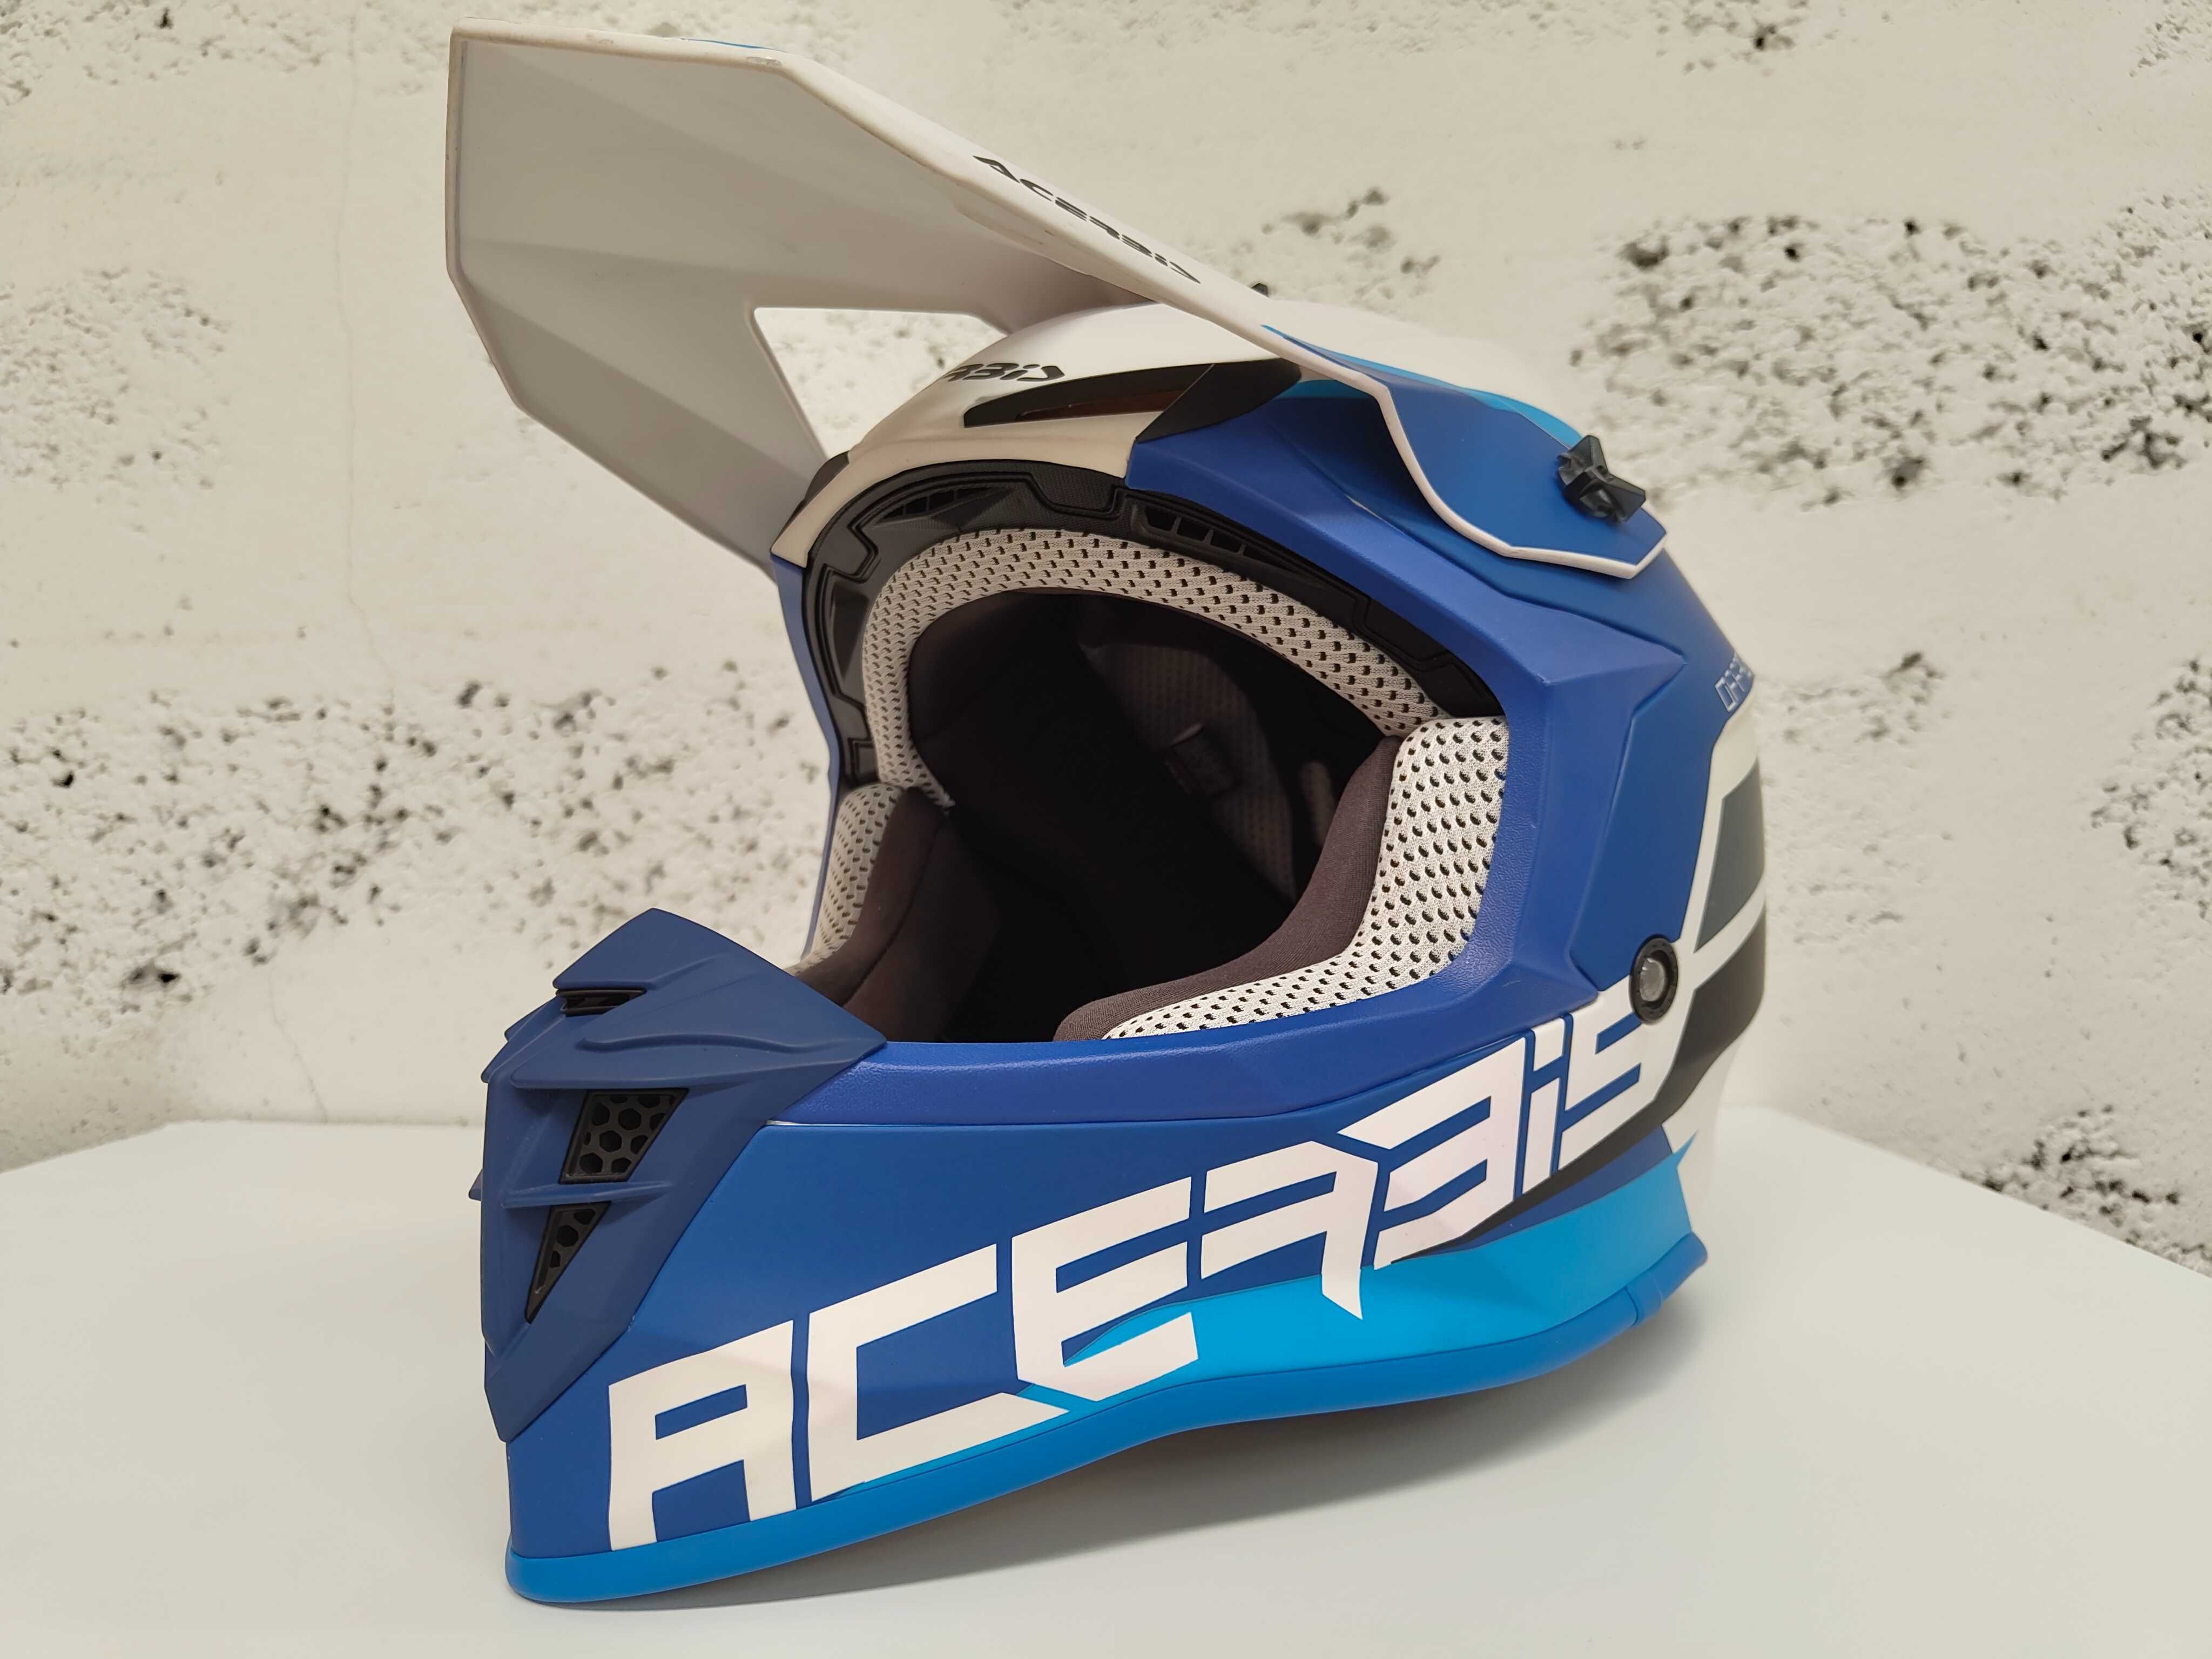 Capacete Acerbis Linear azul OffRoad XL - está novo!